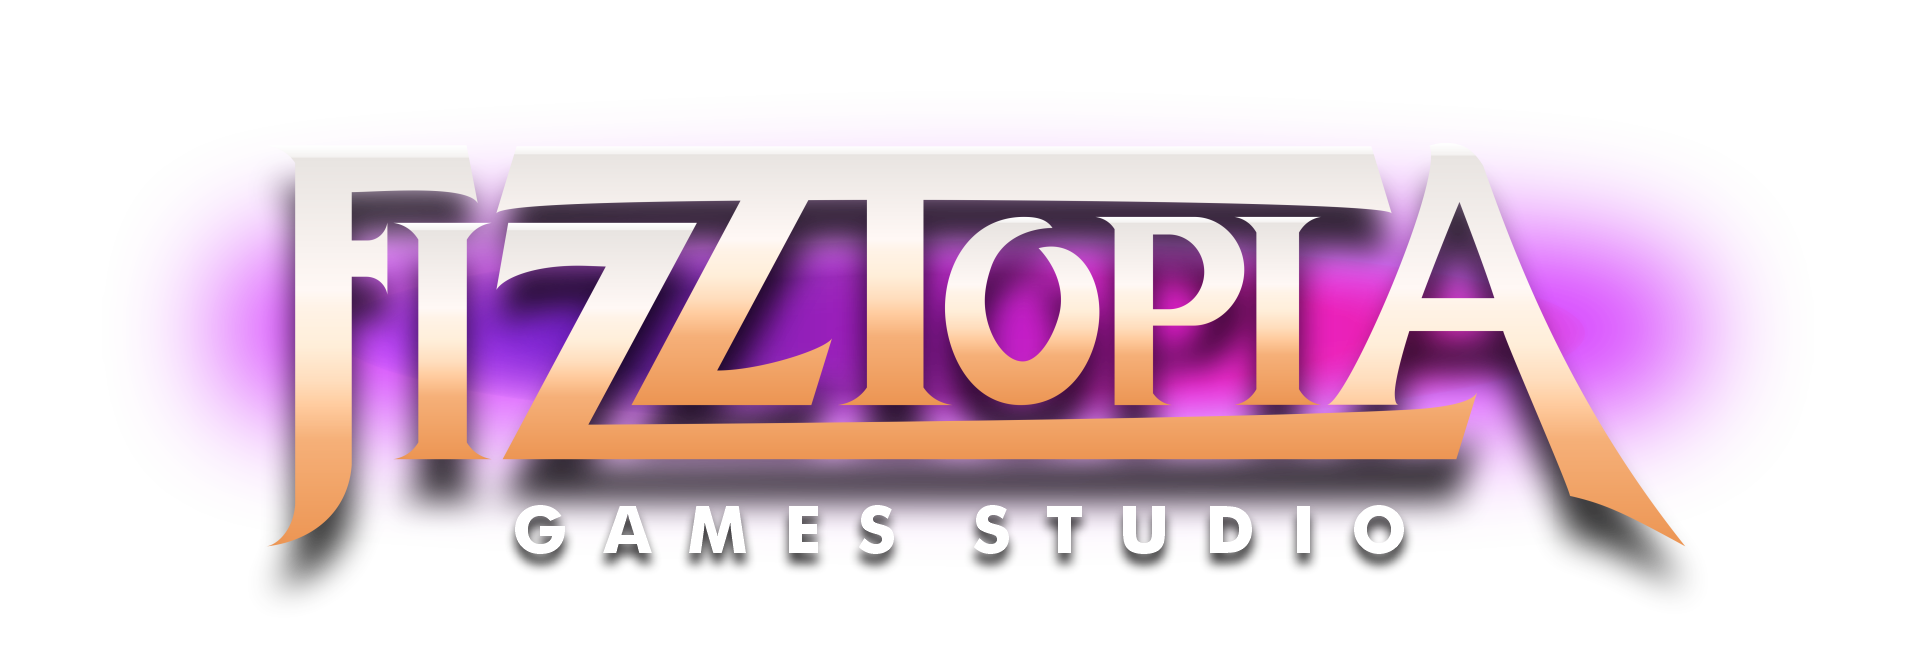 Fizztopa Games Studio